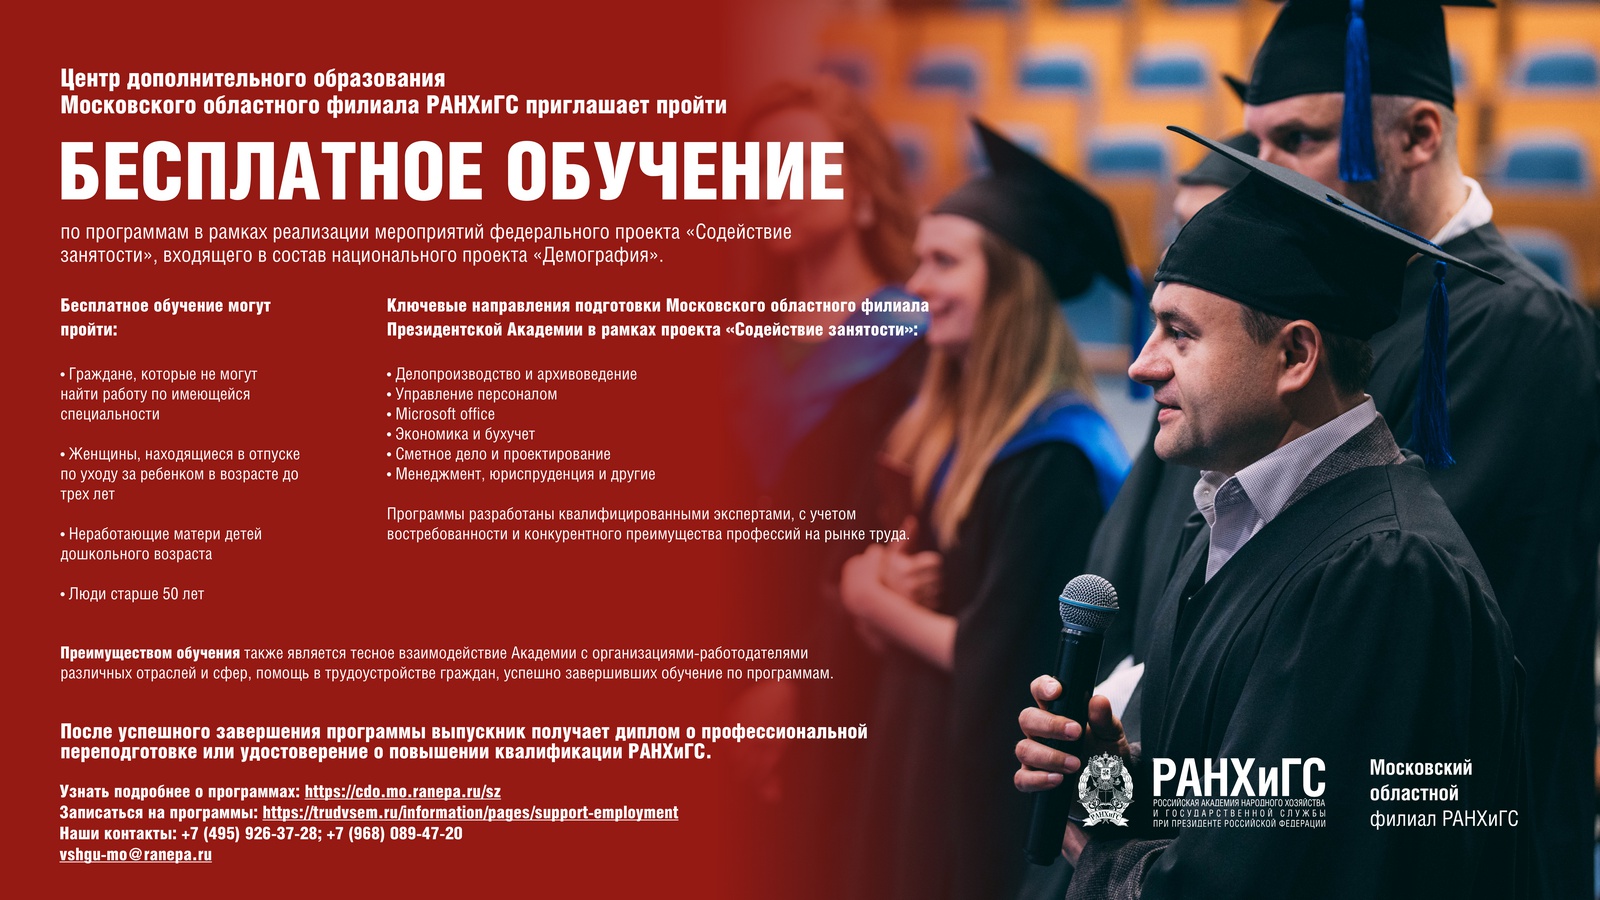 Центр дополнительного образования Московского областного филиала РАНХиГС приглашает пройти бесплатное обучение